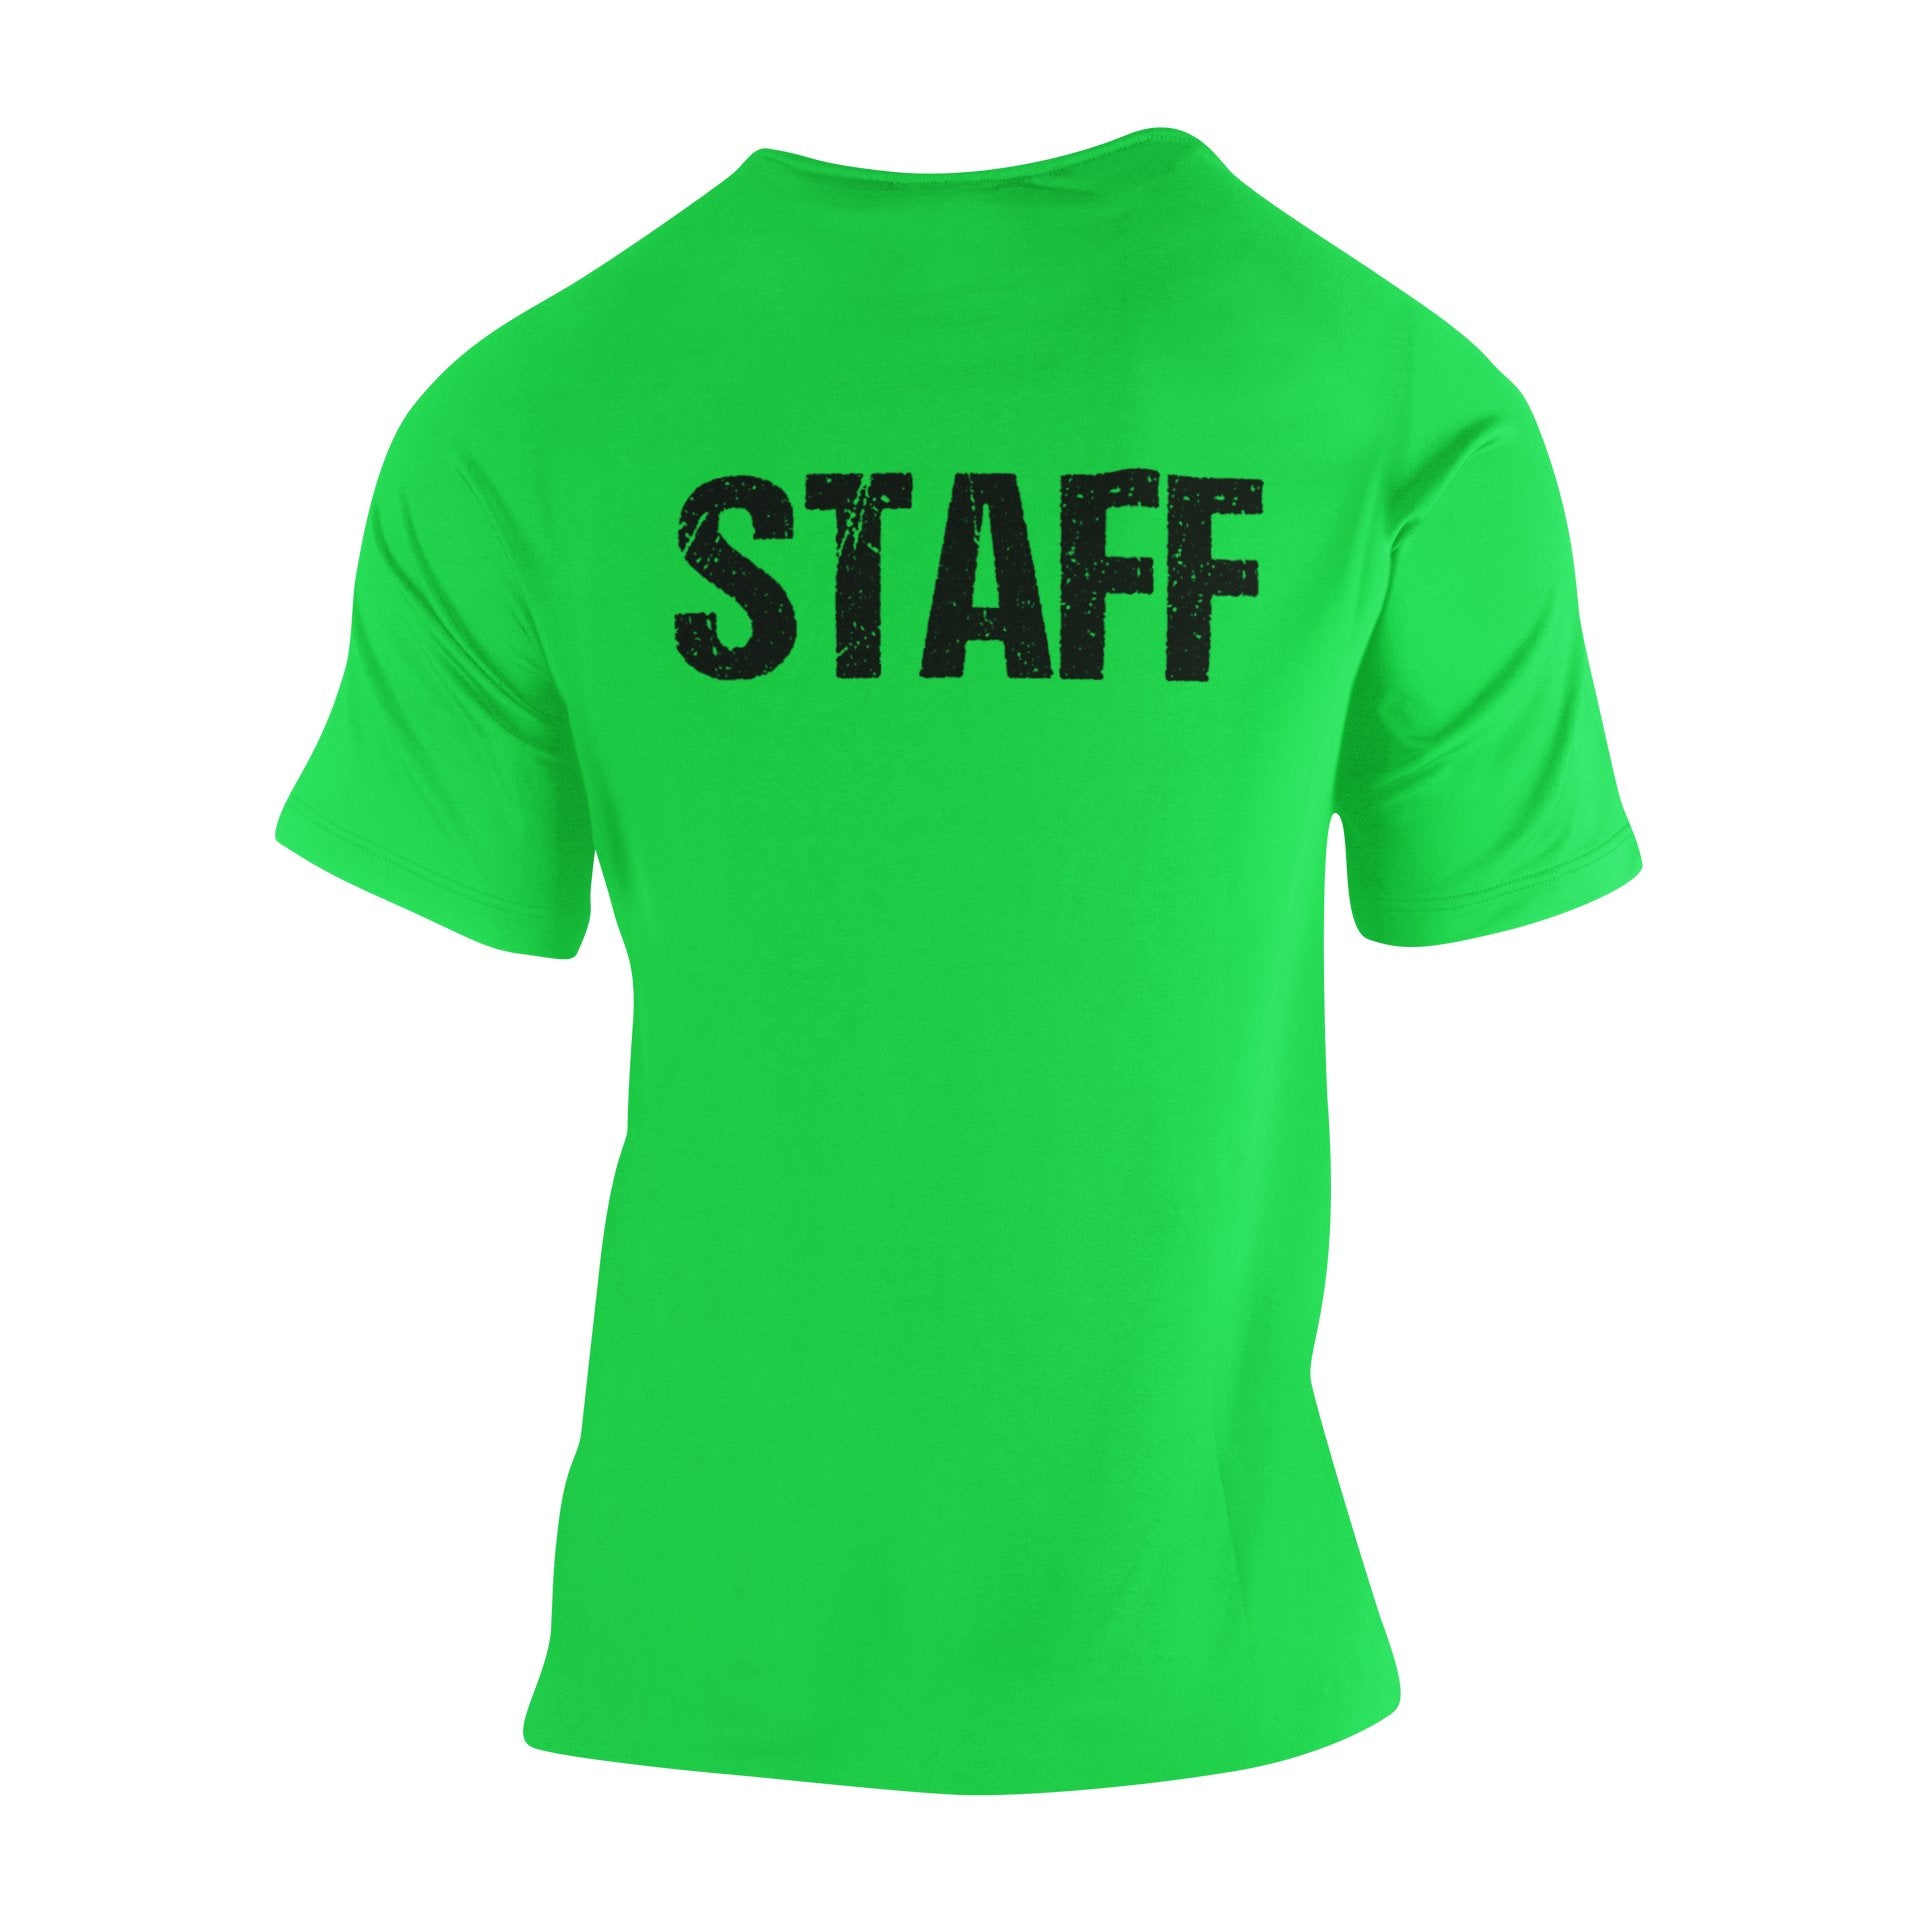 T-shirt Staff pour homme avec imprimé devant et dos (motif vieilli, vert fluo et noir)